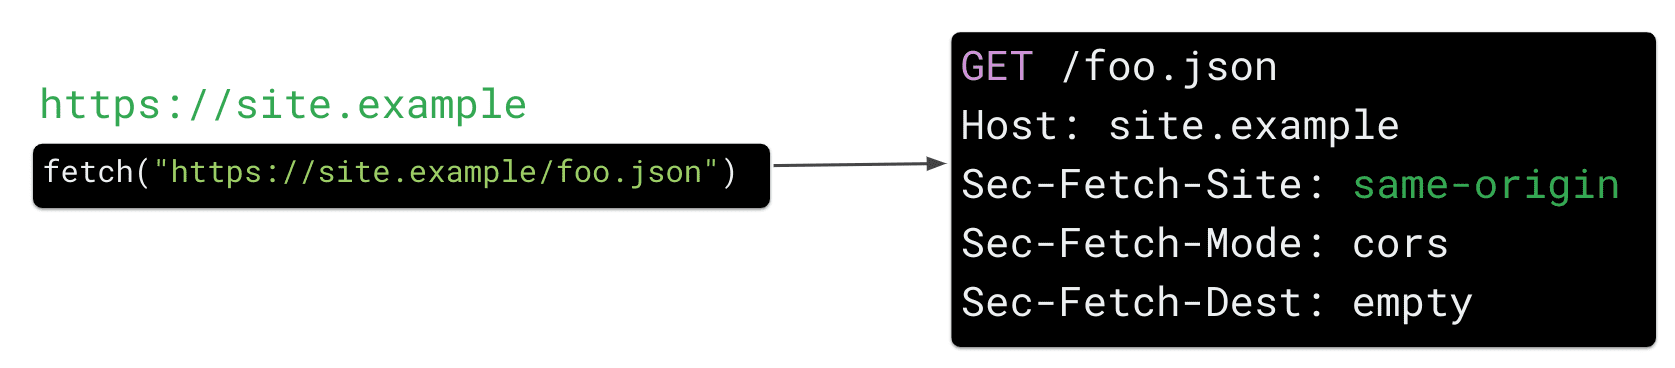 يؤدّي طلب الاسترجاع من https://site.example للمورد https://site.example/foo.json في JavaScript إلى إرسال المتصفّح لعنوان طلب HTTP &quot;Sec Fetch-Site: same-origin&quot;.